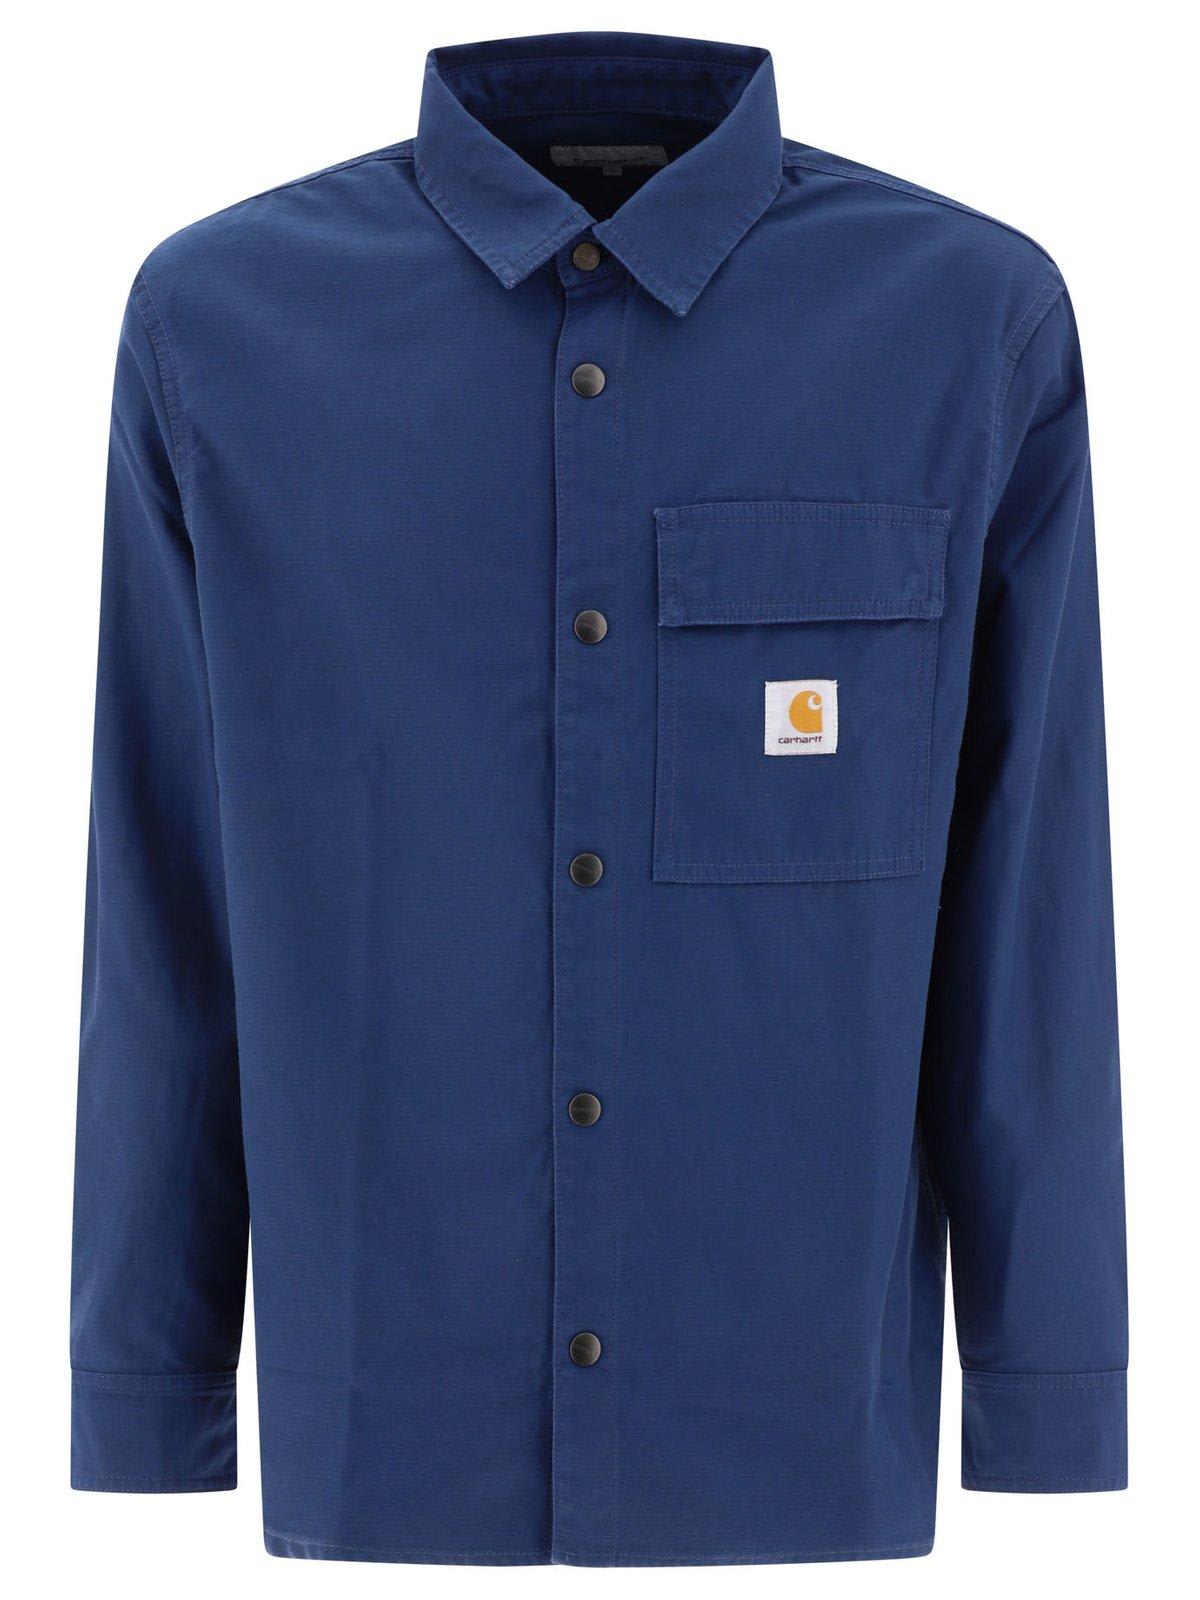 Hayworth Shirt Jacket